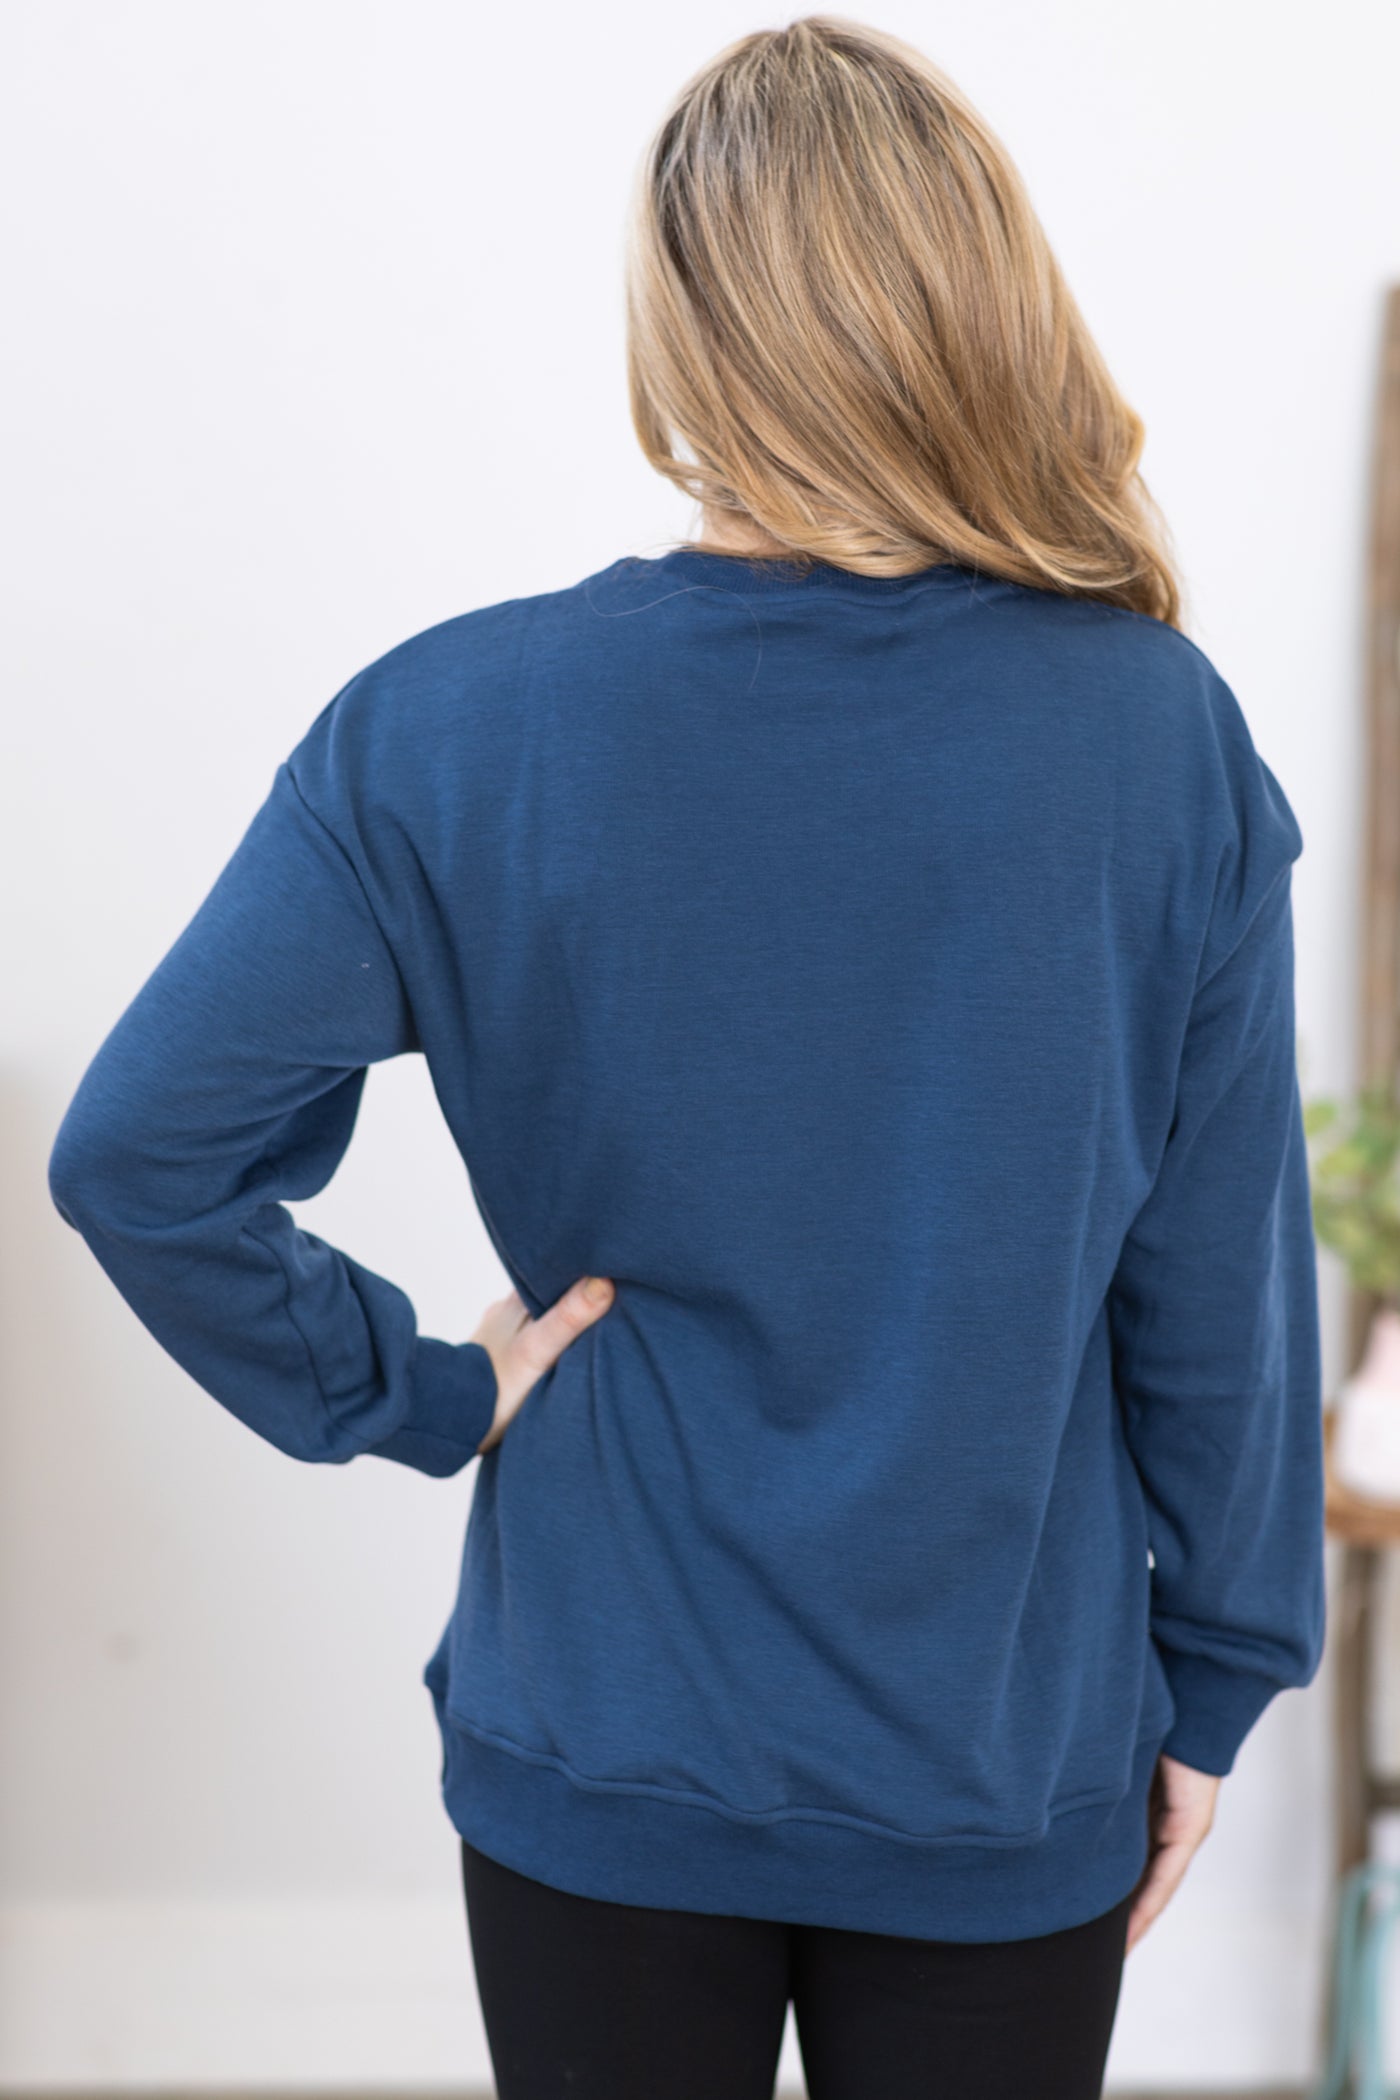 Slate Blue Sweatshirt With Pockets